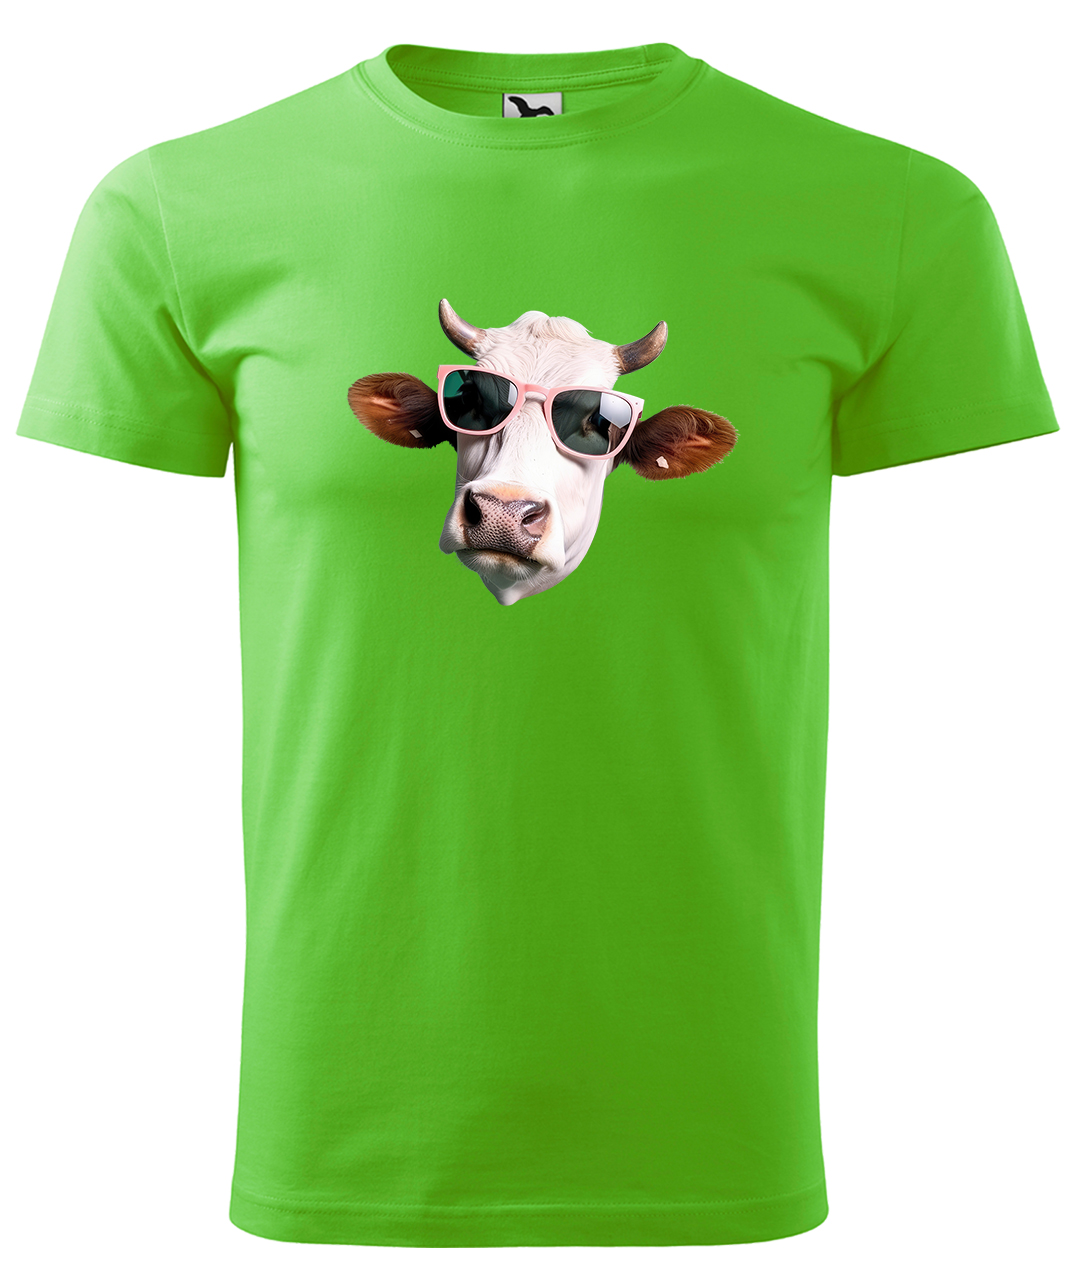 Dětské tričko s krávou - Kráva v brýlích Velikost: 8 let / 134 cm, Barva: Apple Green (92), Délka rukávu: Krátký rukáv